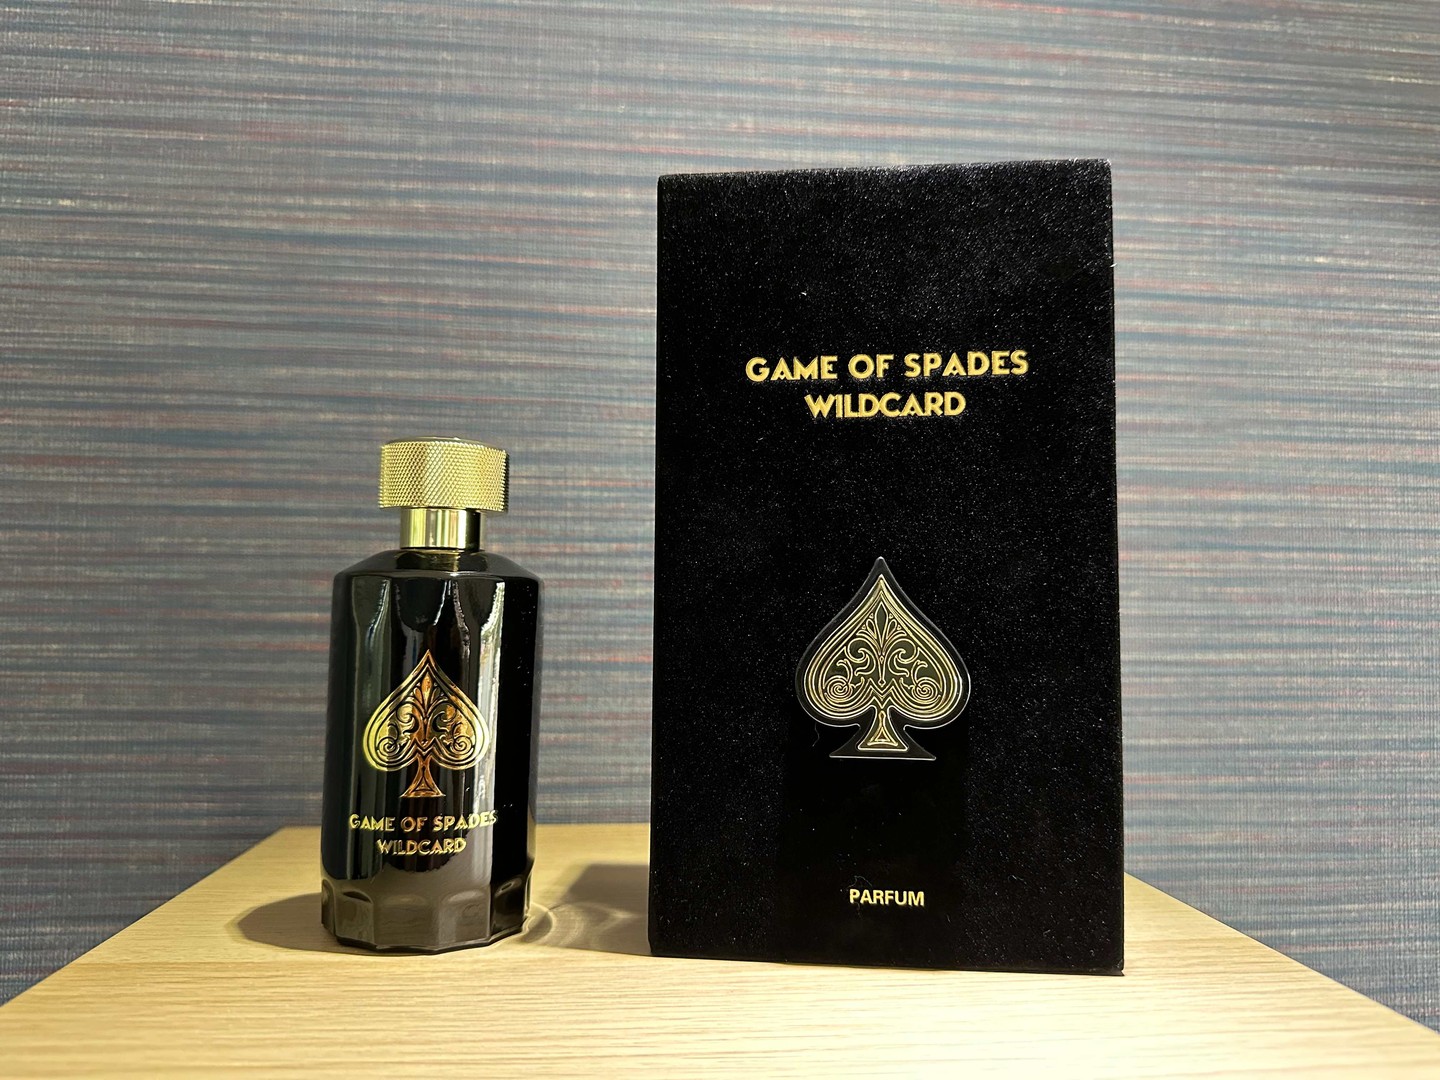 joyas, relojes y accesorios - Perfumes Jo Milano Paris Game of Spades Wildcard Nuevo 100ml RD$ 5,900 NEG